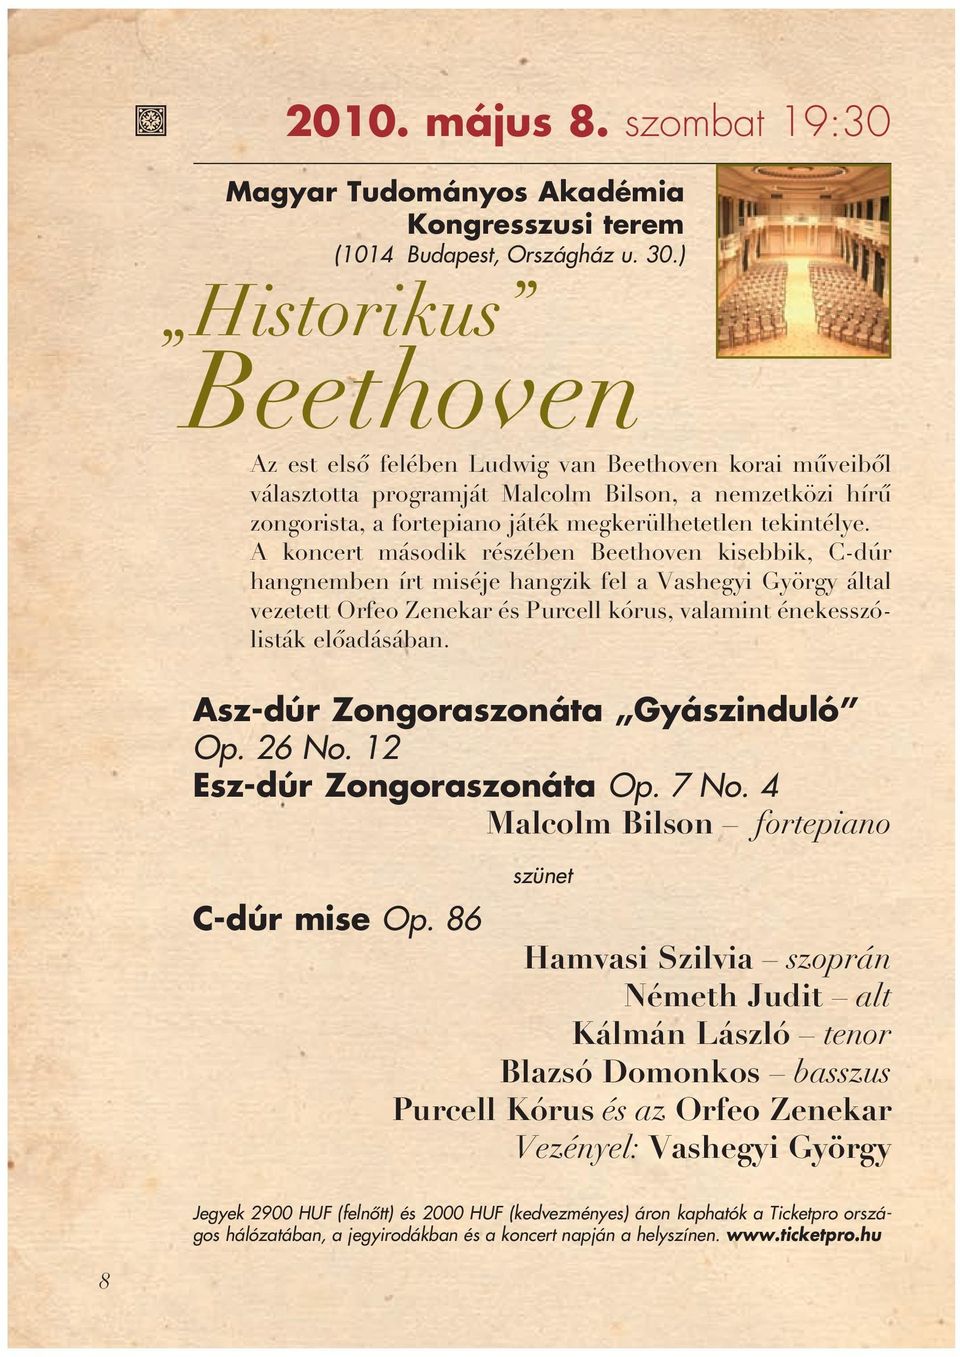 A koncert második részében Beethoven kisebbik, C-dúr hangnemben írt miséje hangzik fel a Vashegyi György által vezetett Orfeo Zenekar és Purcell kórus, valamint énekesszólisták elôadásában.